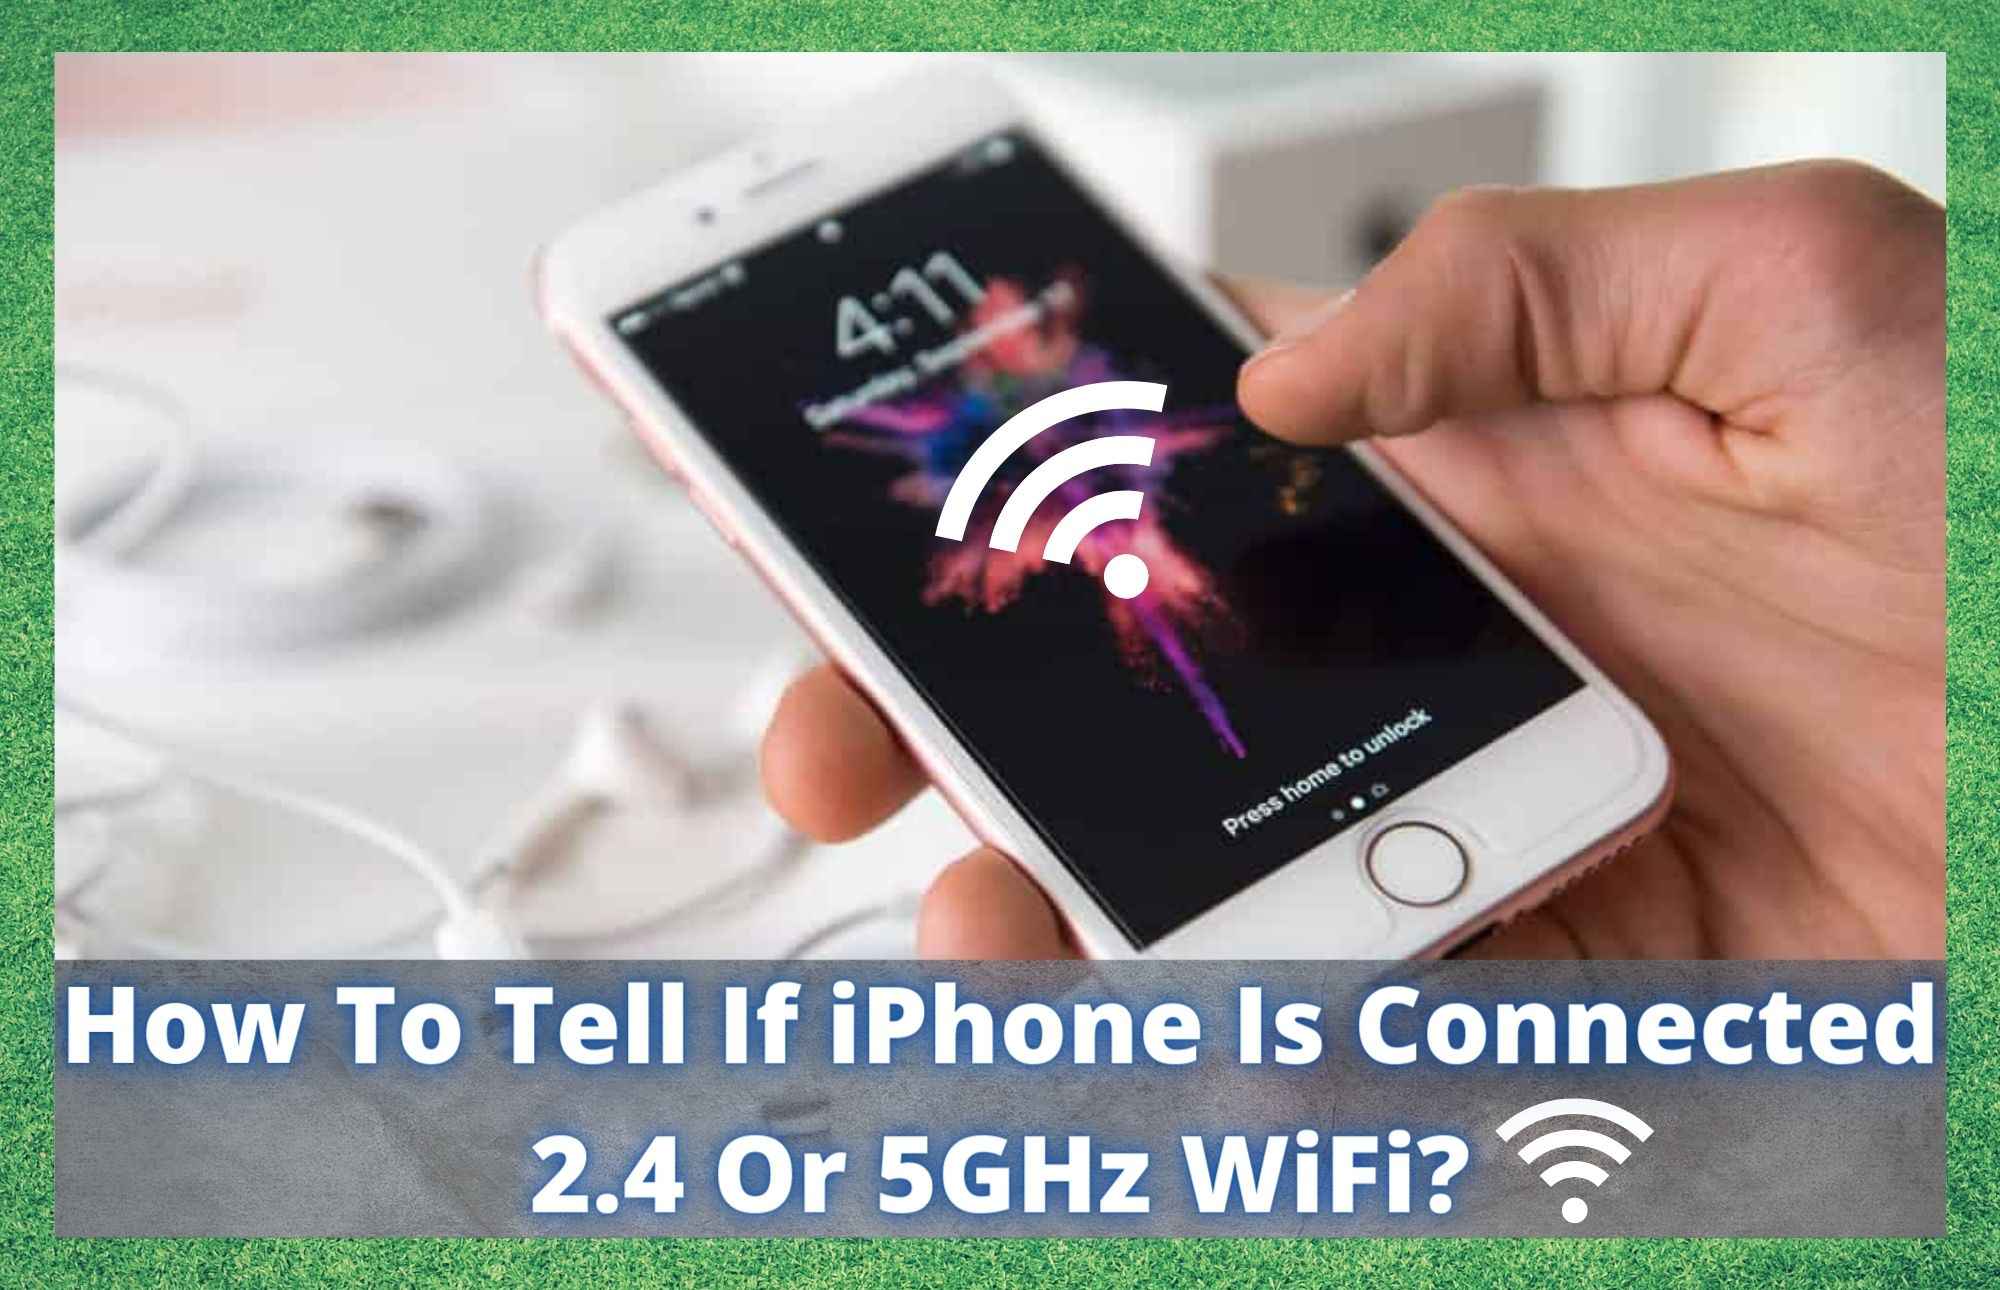 આઇફોન 2.4 અથવા 5GHz WiFi સાથે જોડાયેલ છે કે કેમ તે કેવી રીતે કહેવું?